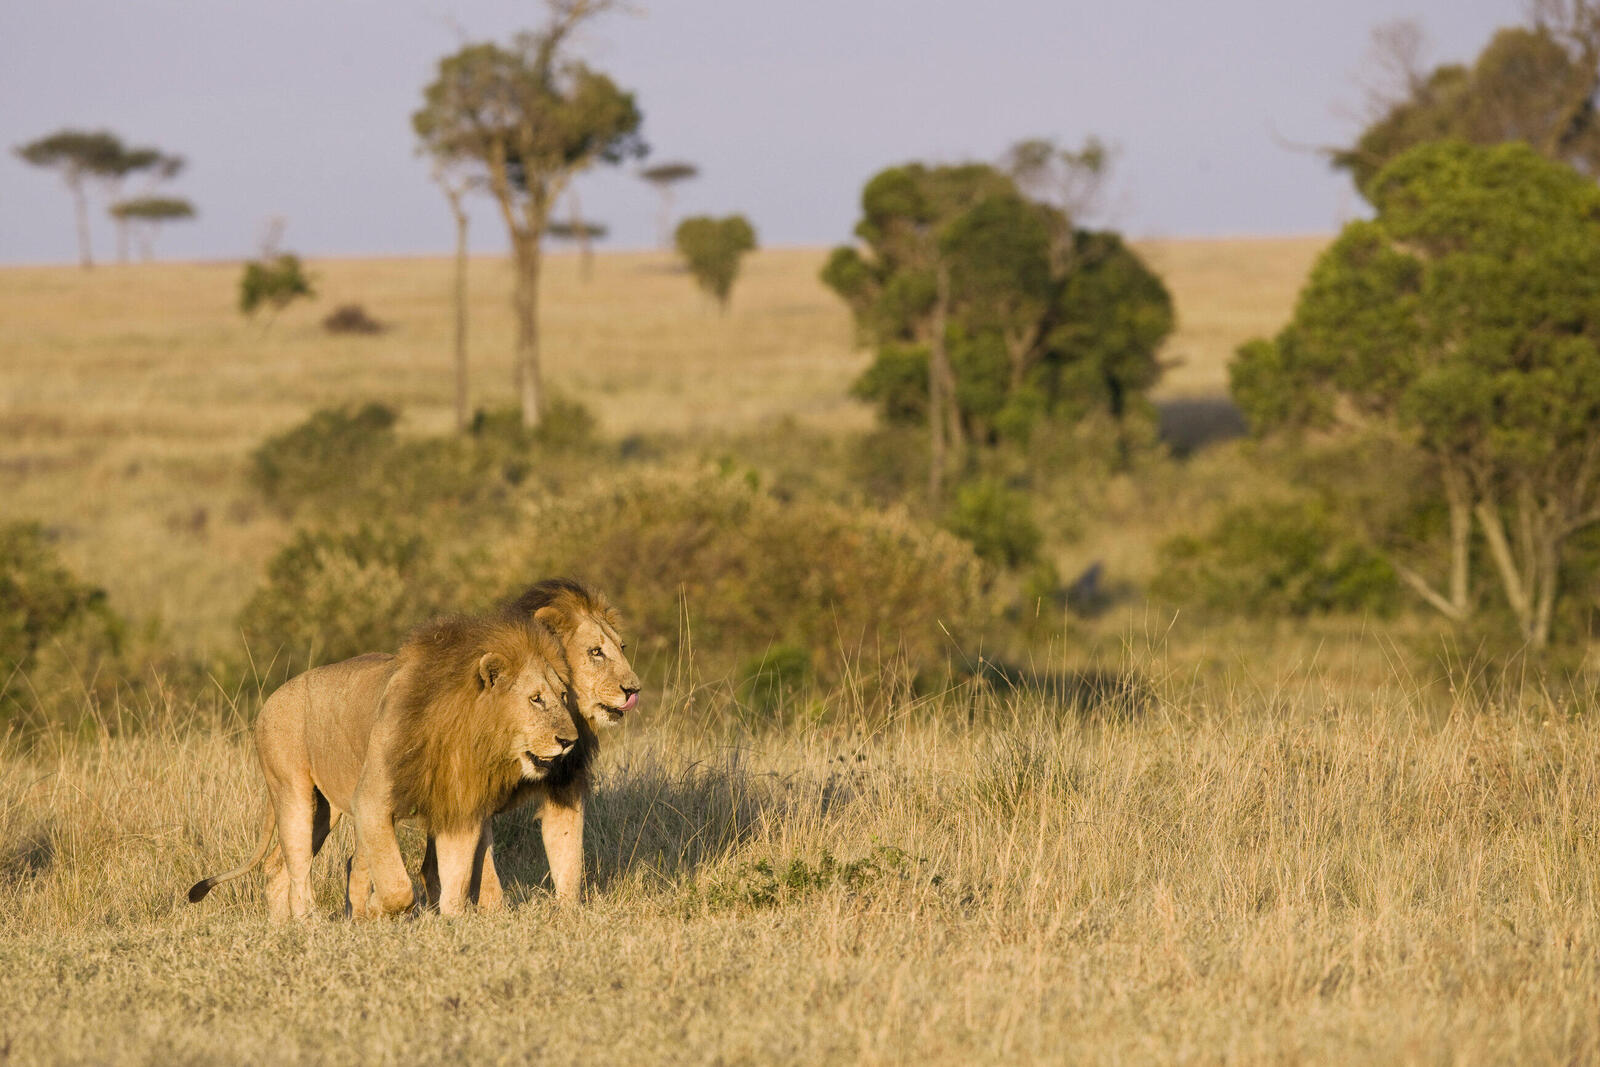 Two male lions walking